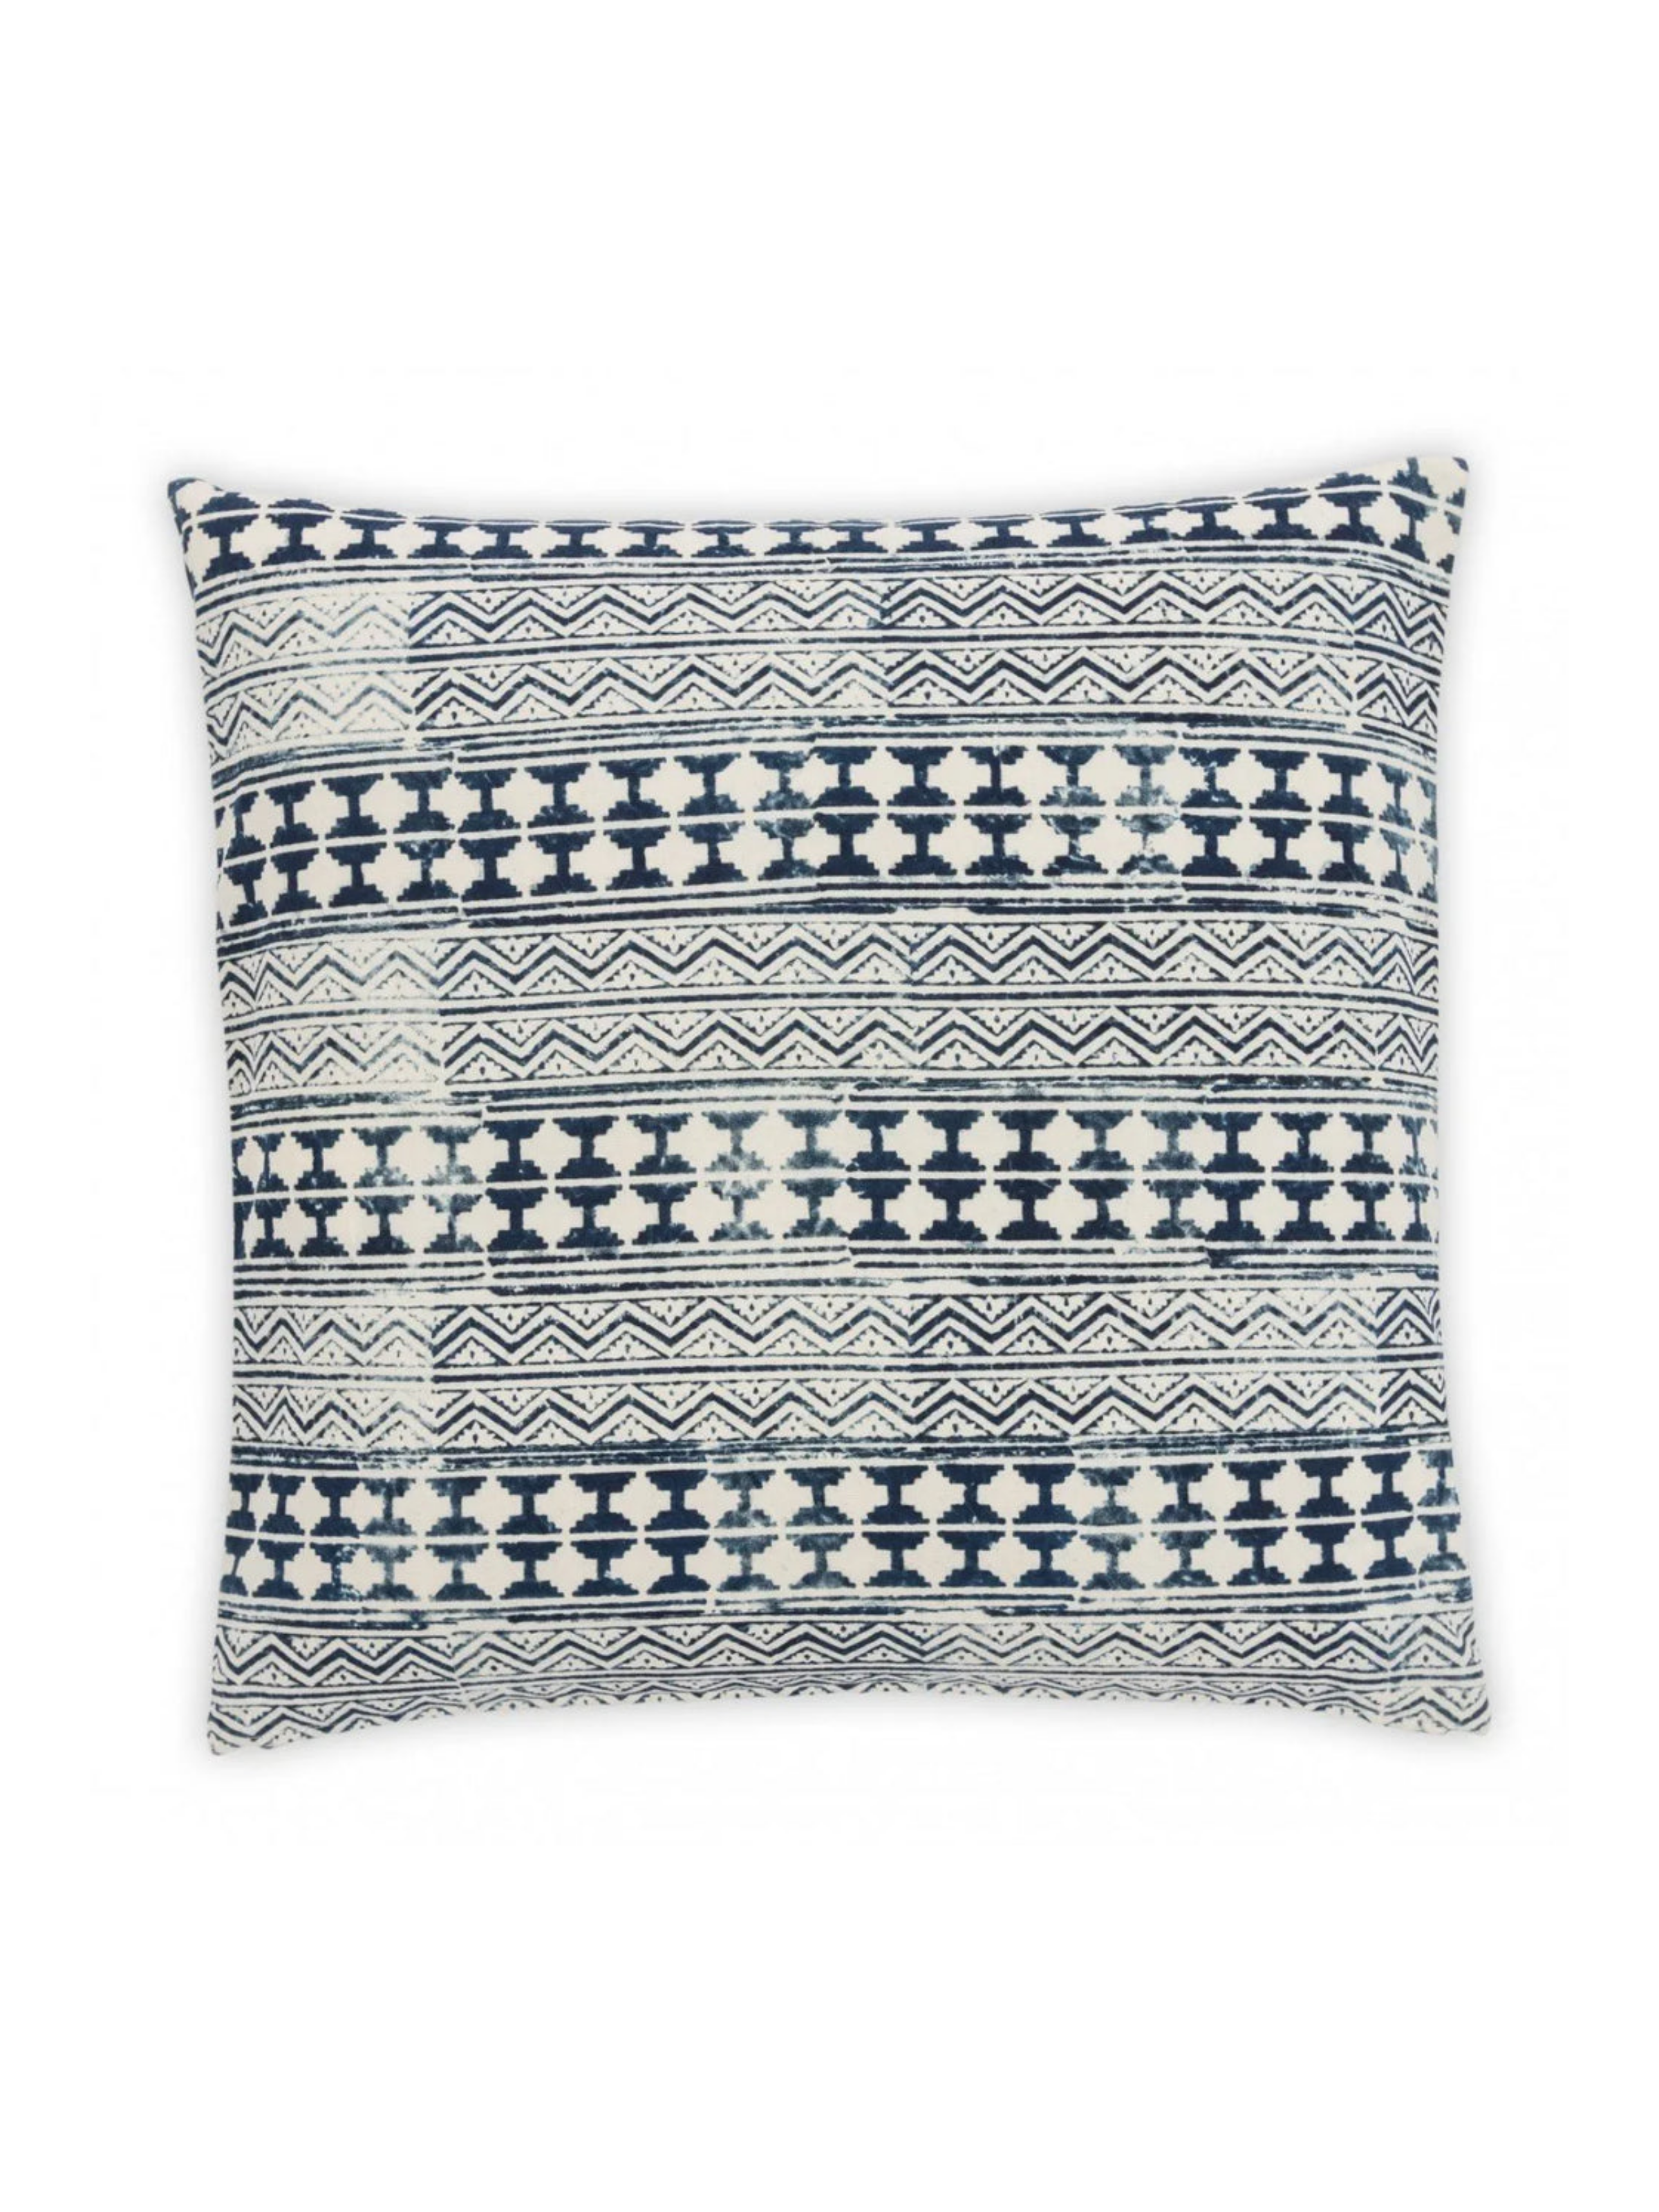 Totonac Indigo Cotton Decorative Pillow